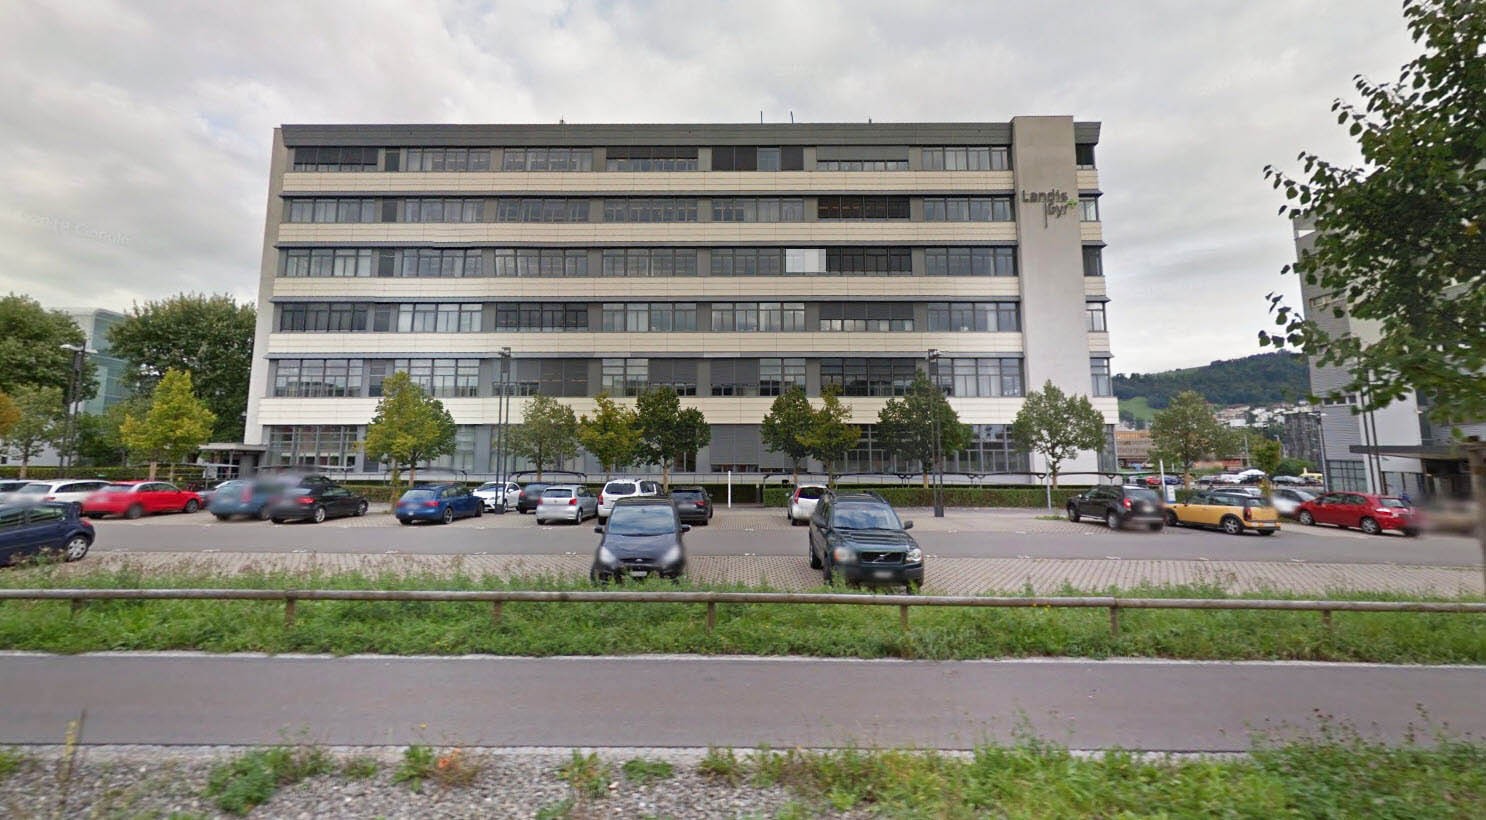 Hauptsitz der Landis + Gyr in Zug.